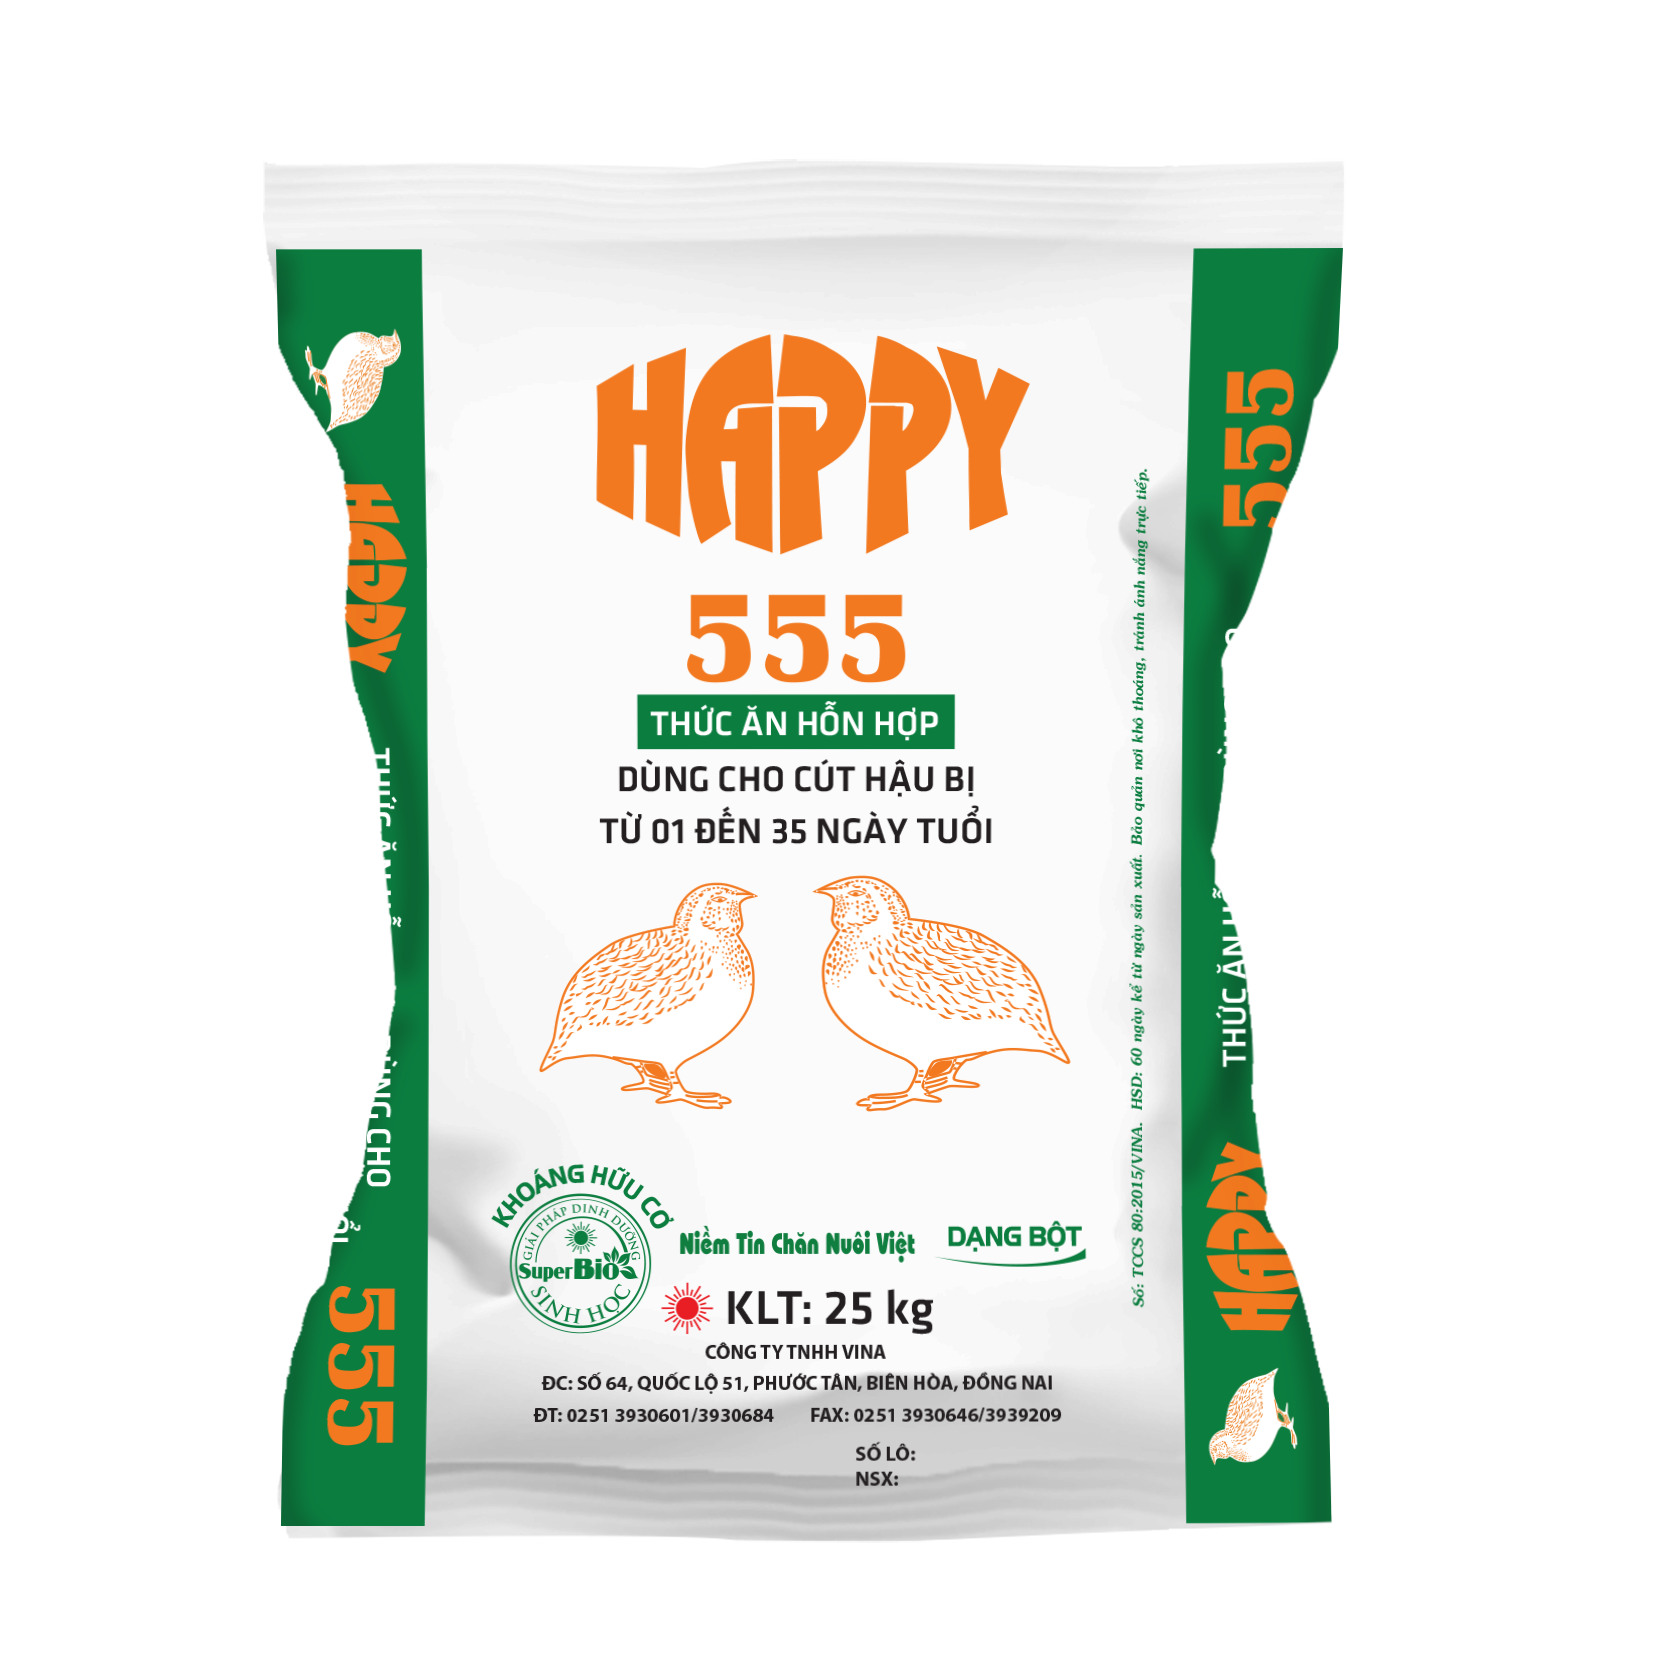 HAPPY 555